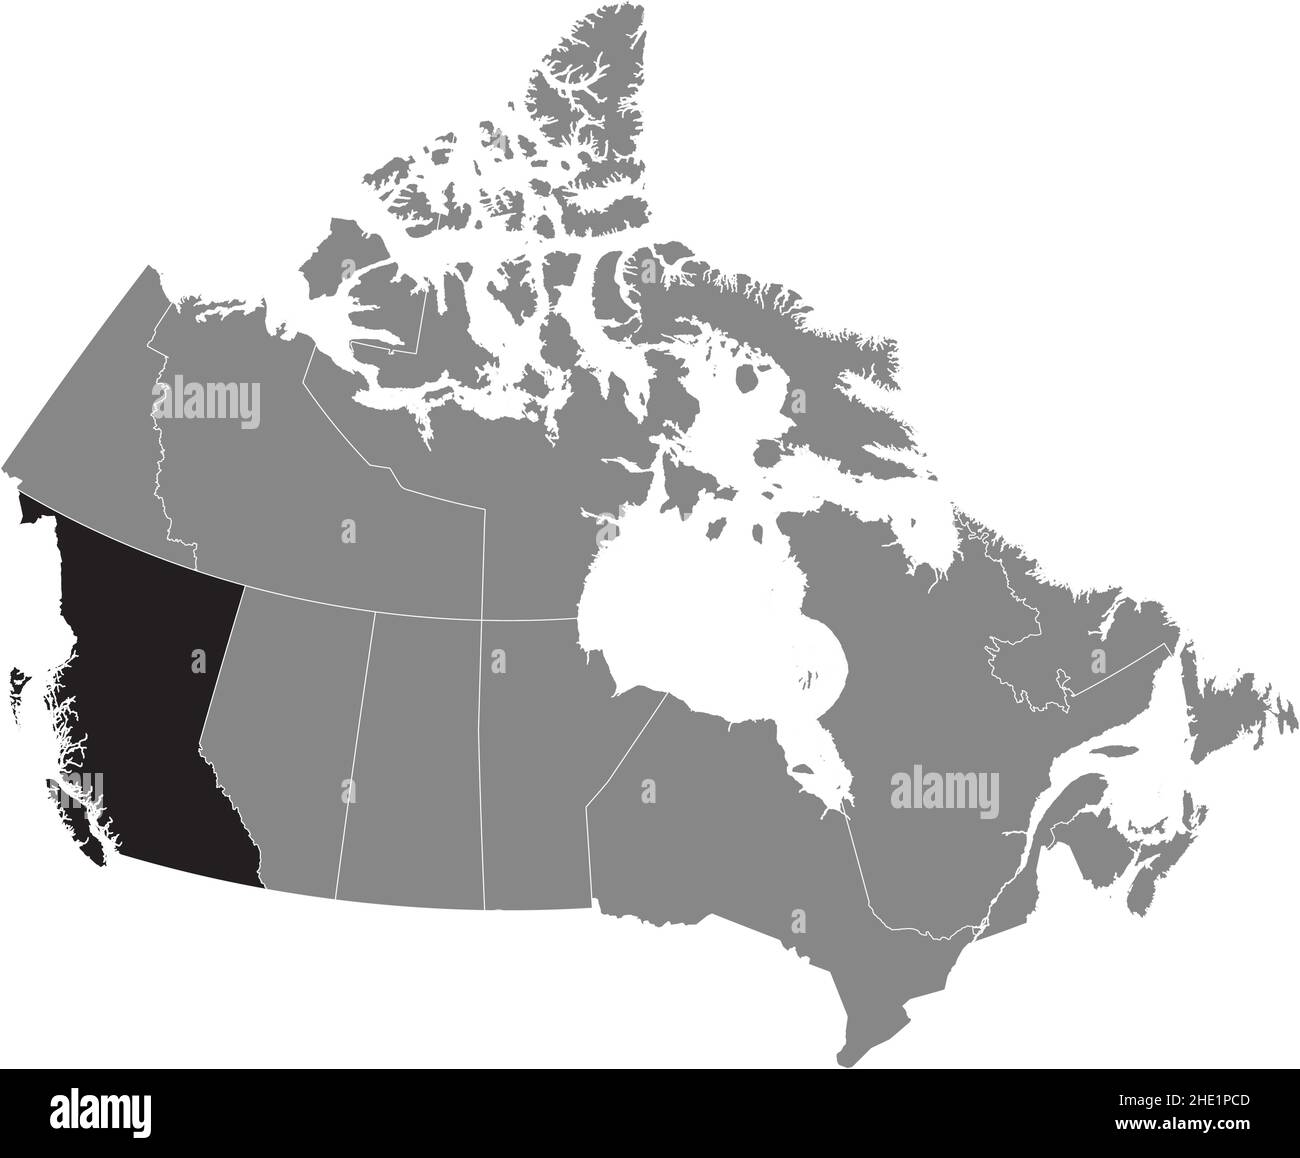 Carte administrative de la province canadienne de LA COLOMBIE-BRITANNIQUE à l'intérieur de la carte plate grise du CANADA Illustration de Vecteur